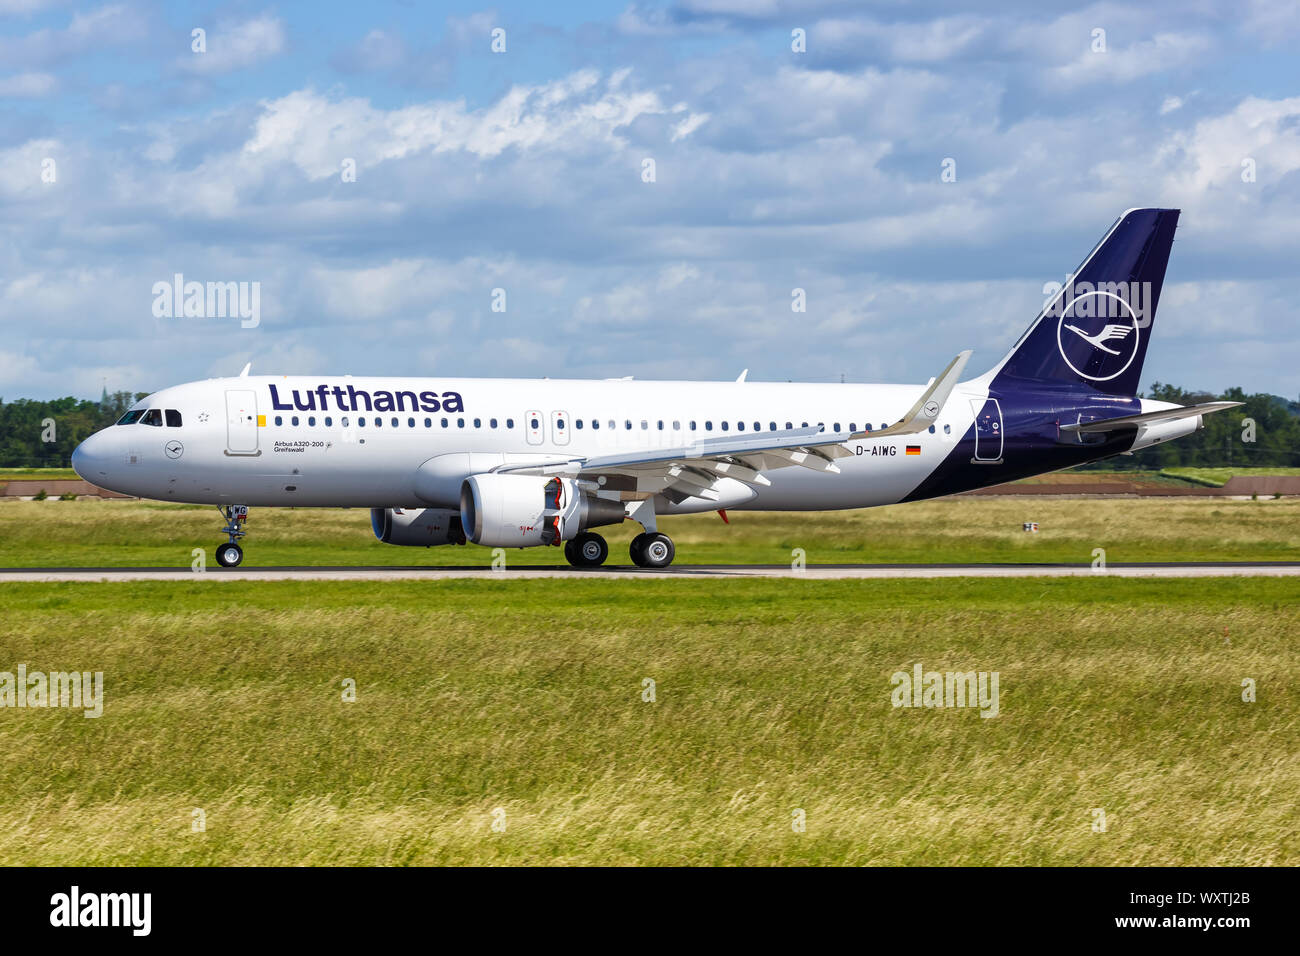 Stuttgart, Deutschland - Juni 8, 2019: Lufthansa Airbus A320 Flugzeug am Flughafen Stuttgart (STR) in Deutschland. Stockfoto